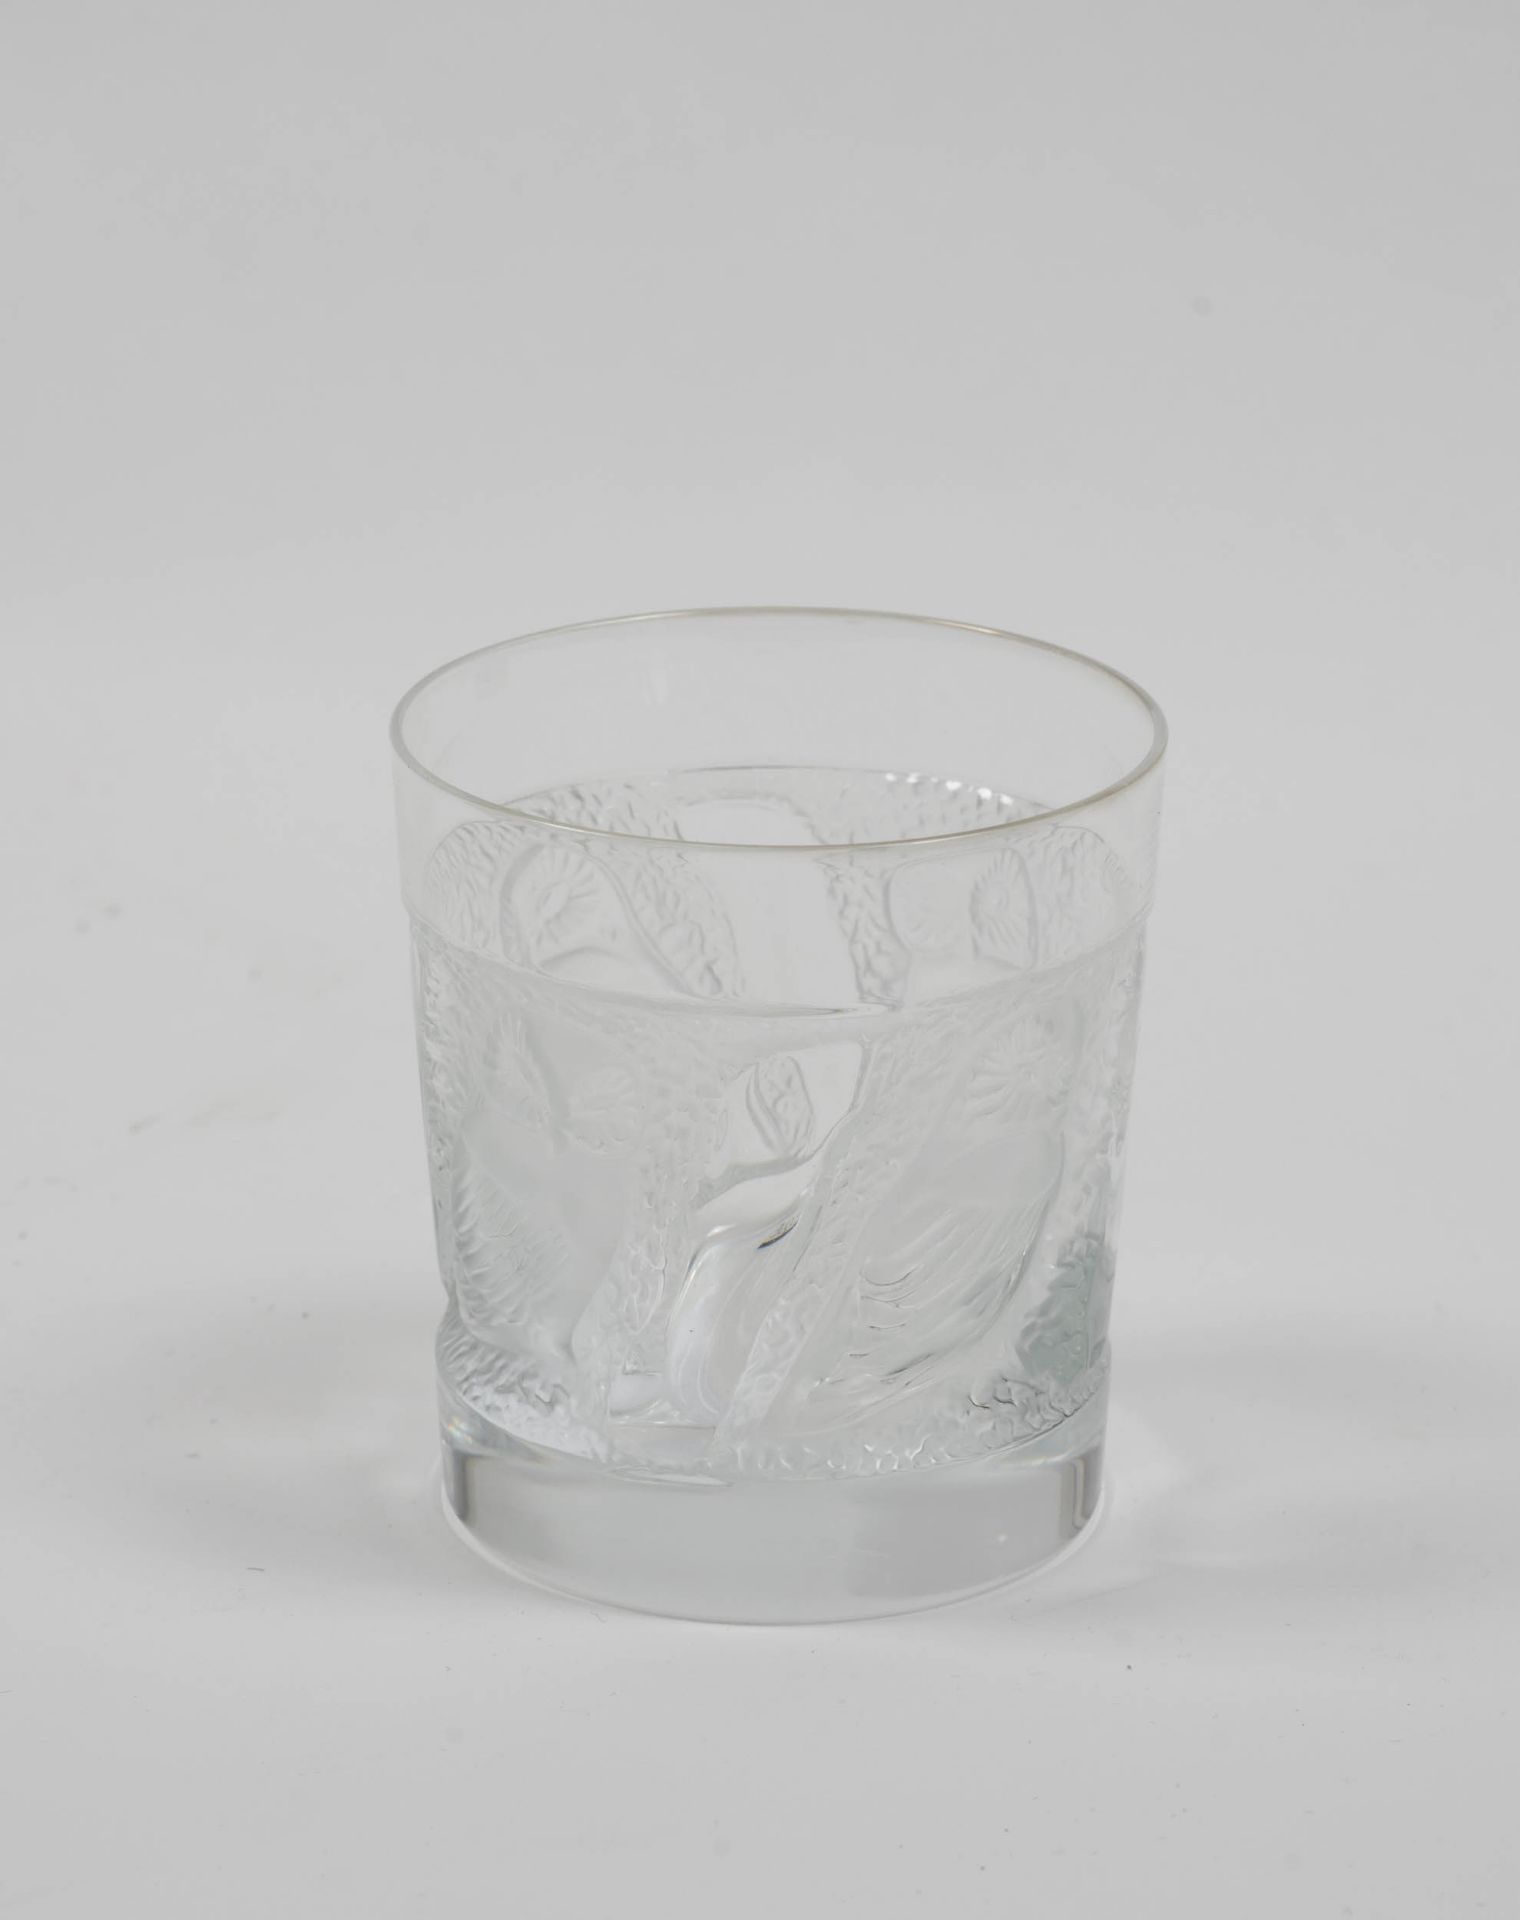 Cognac-Karaffe mit Gläsern 'Collection Hulotte'Lalique, 20. Jh., Glas, partiell mattiert, Karaffe - Bild 3 aus 3